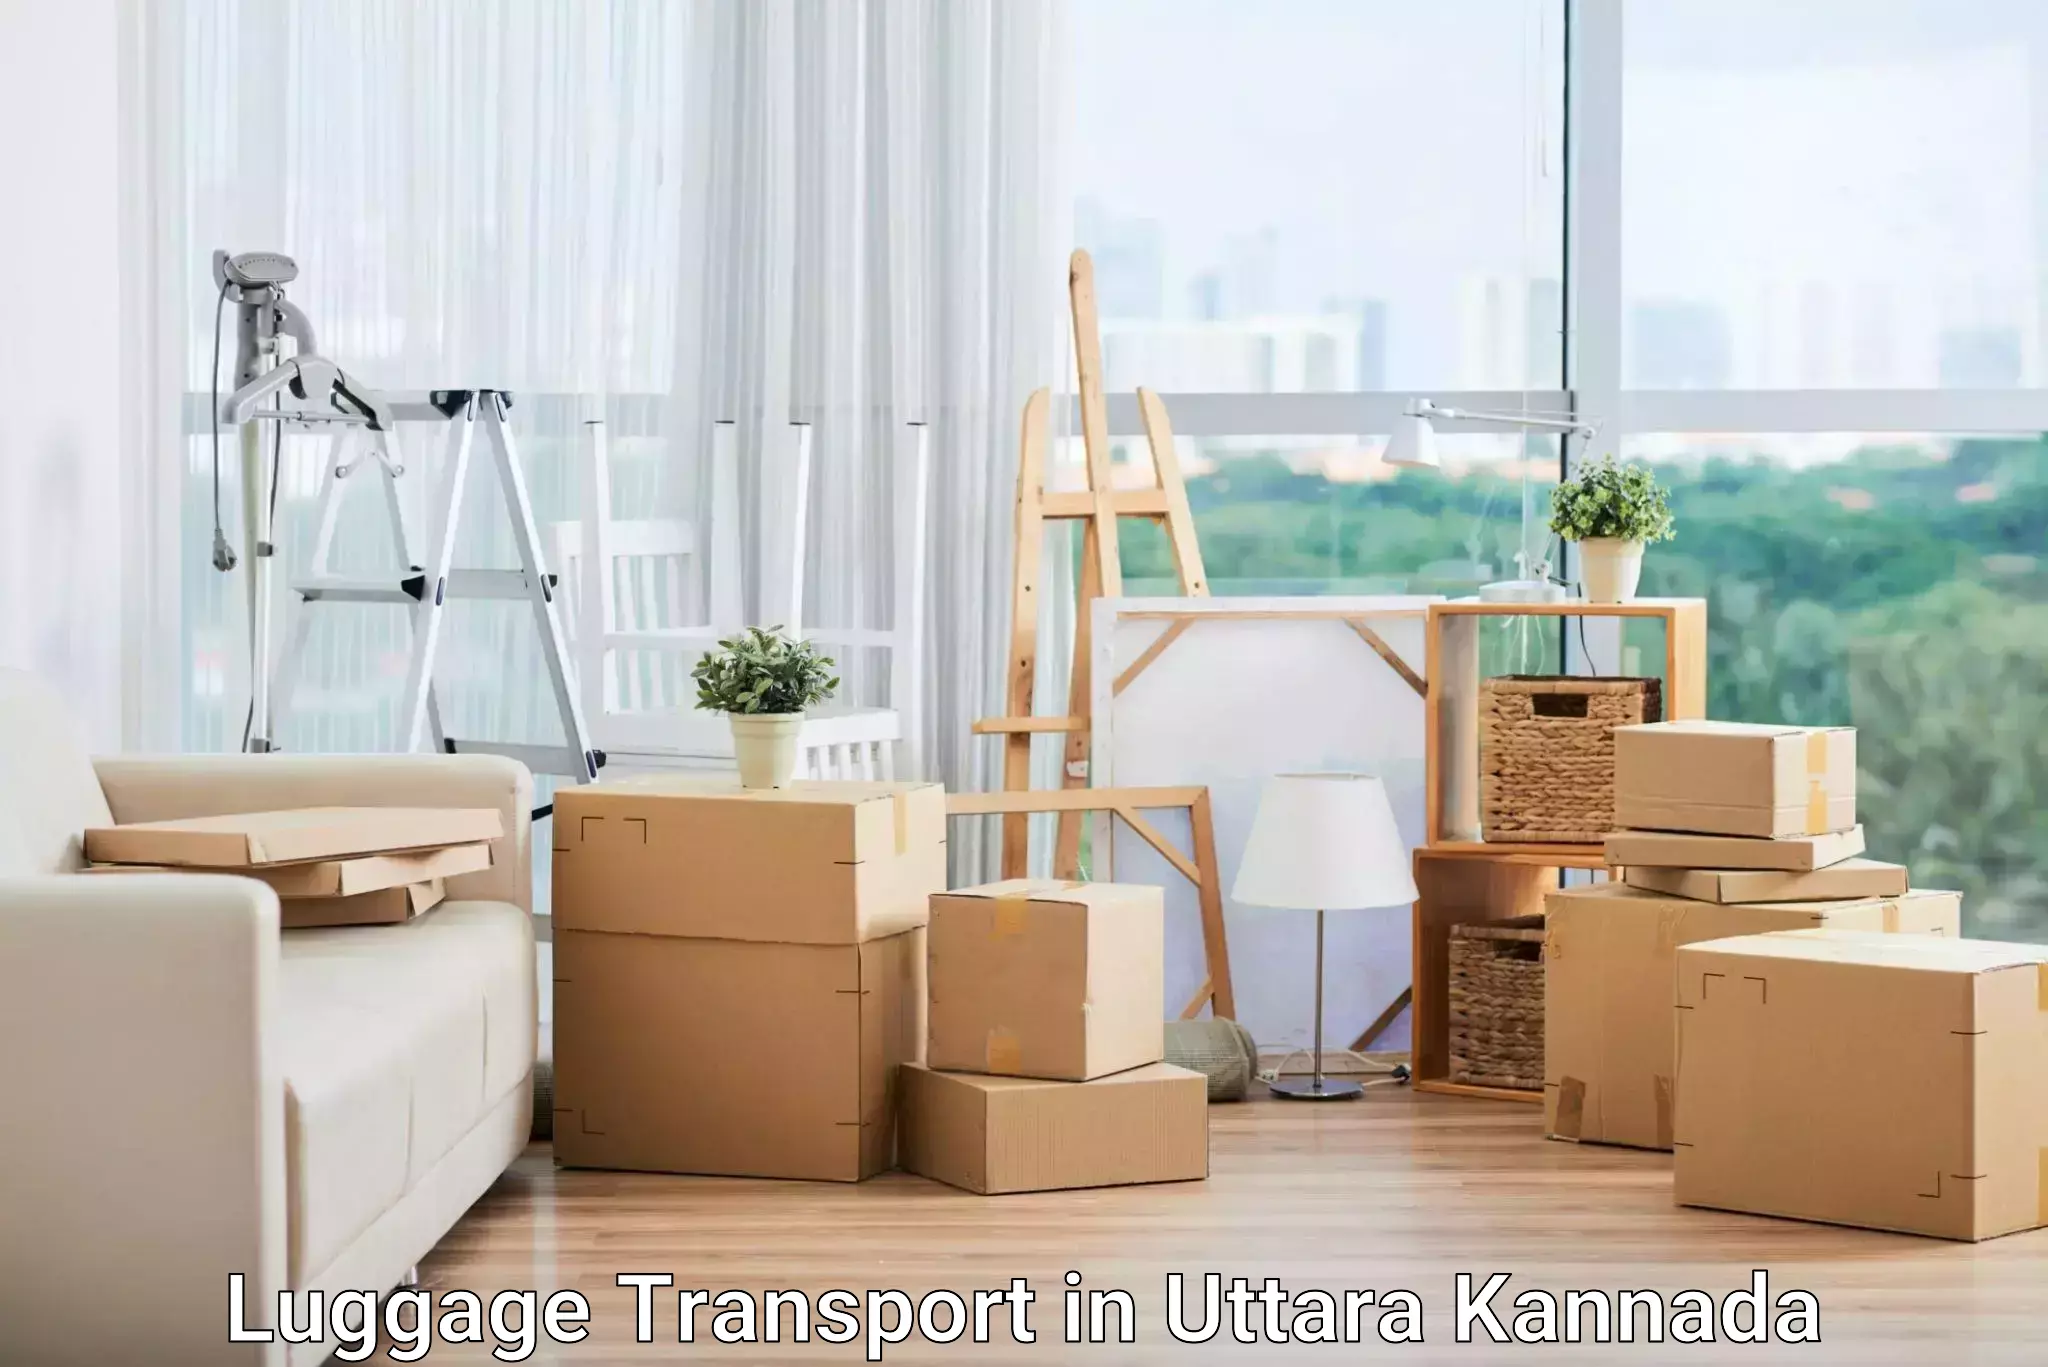 Luggage delivery system in Uttara Kannada